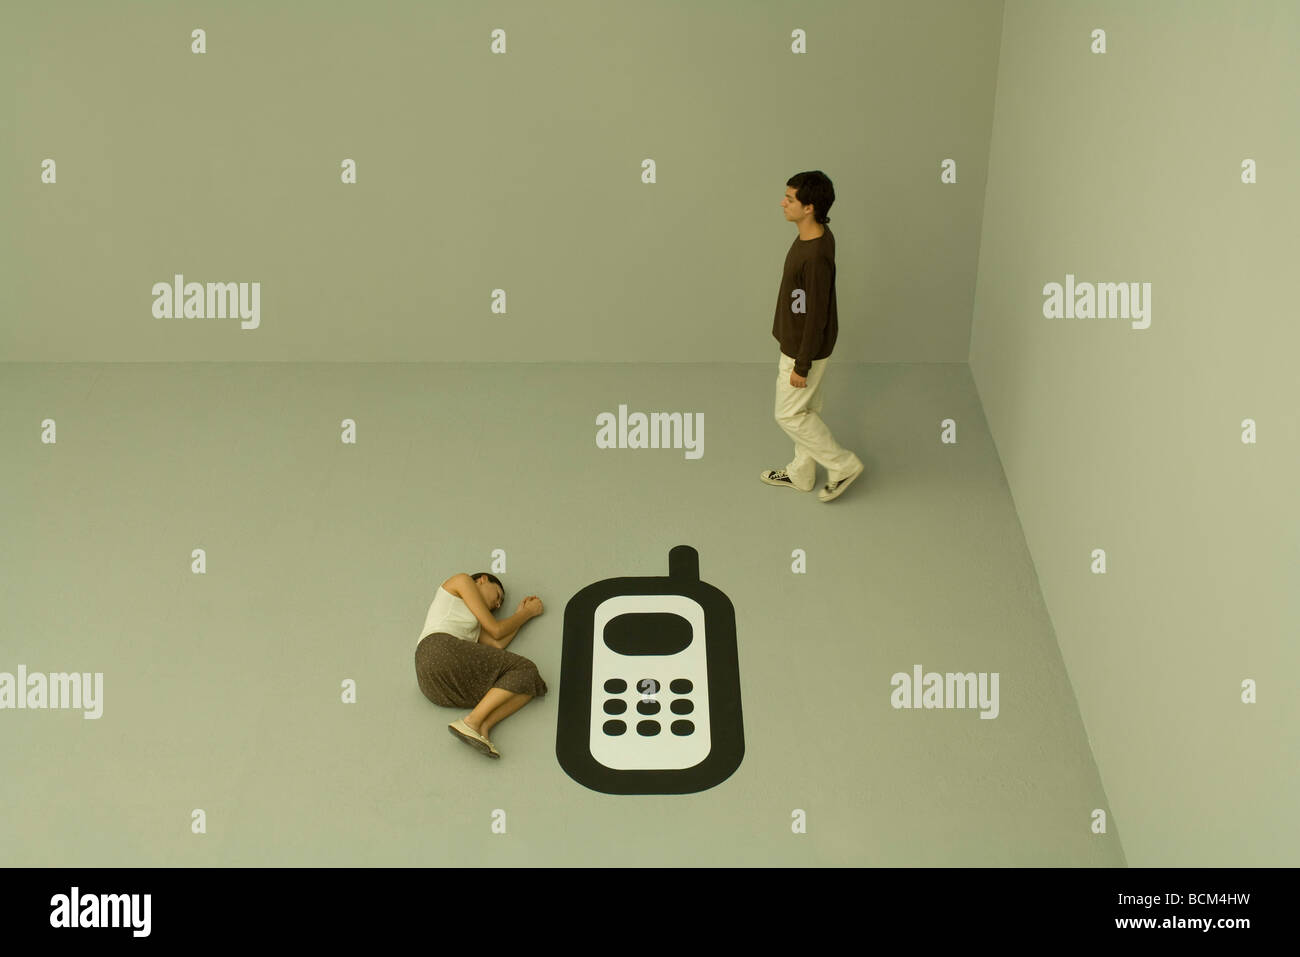 Femme couchée sur le sol à côté de grandes téléphone cellulaire, l'homme marche loin Banque D'Images